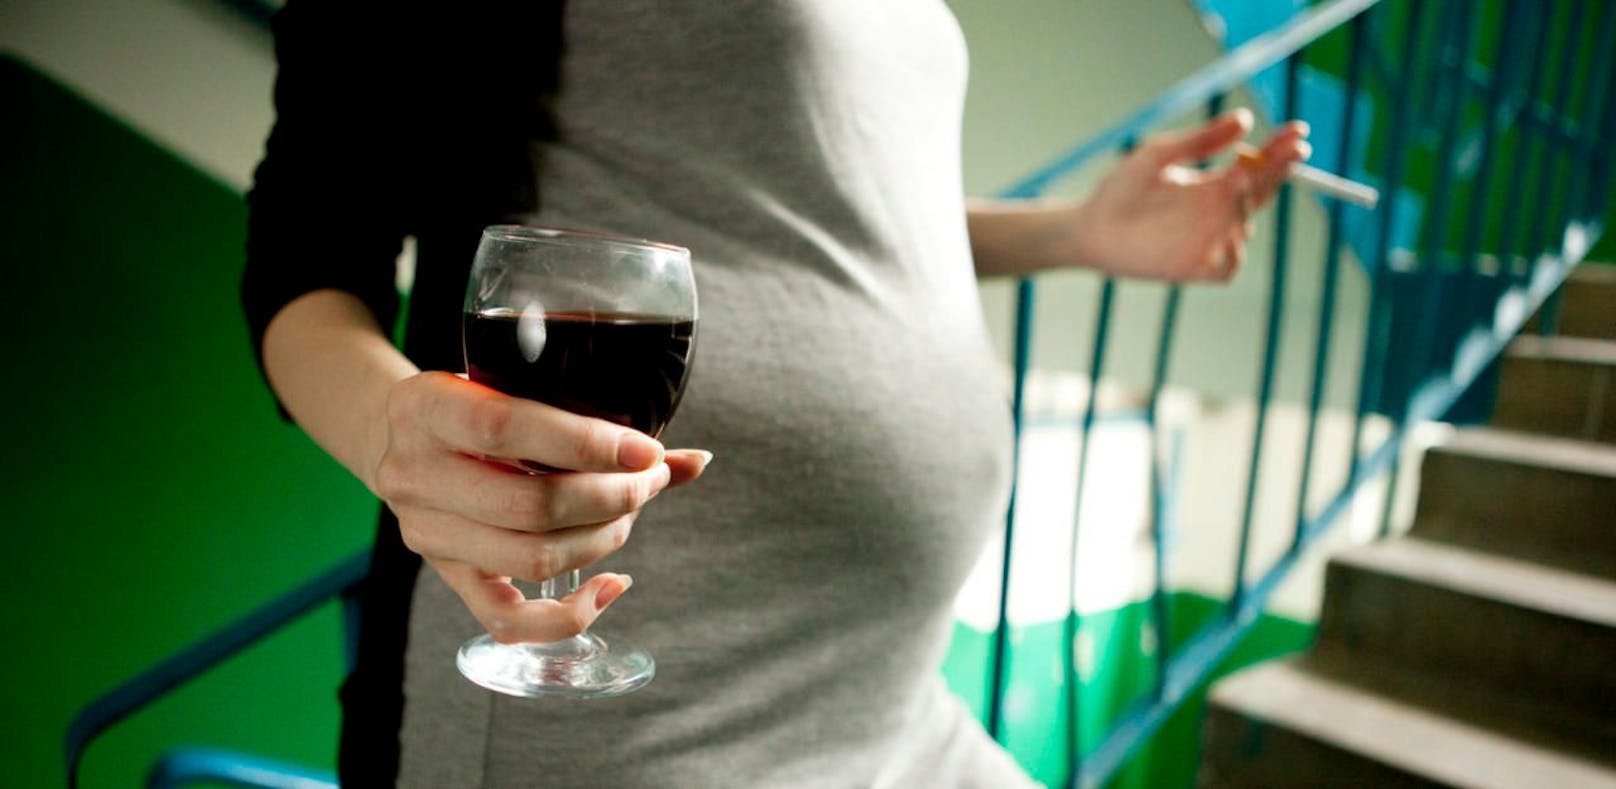 Die Polizei fanden die schwangere Frau völlig betrunken